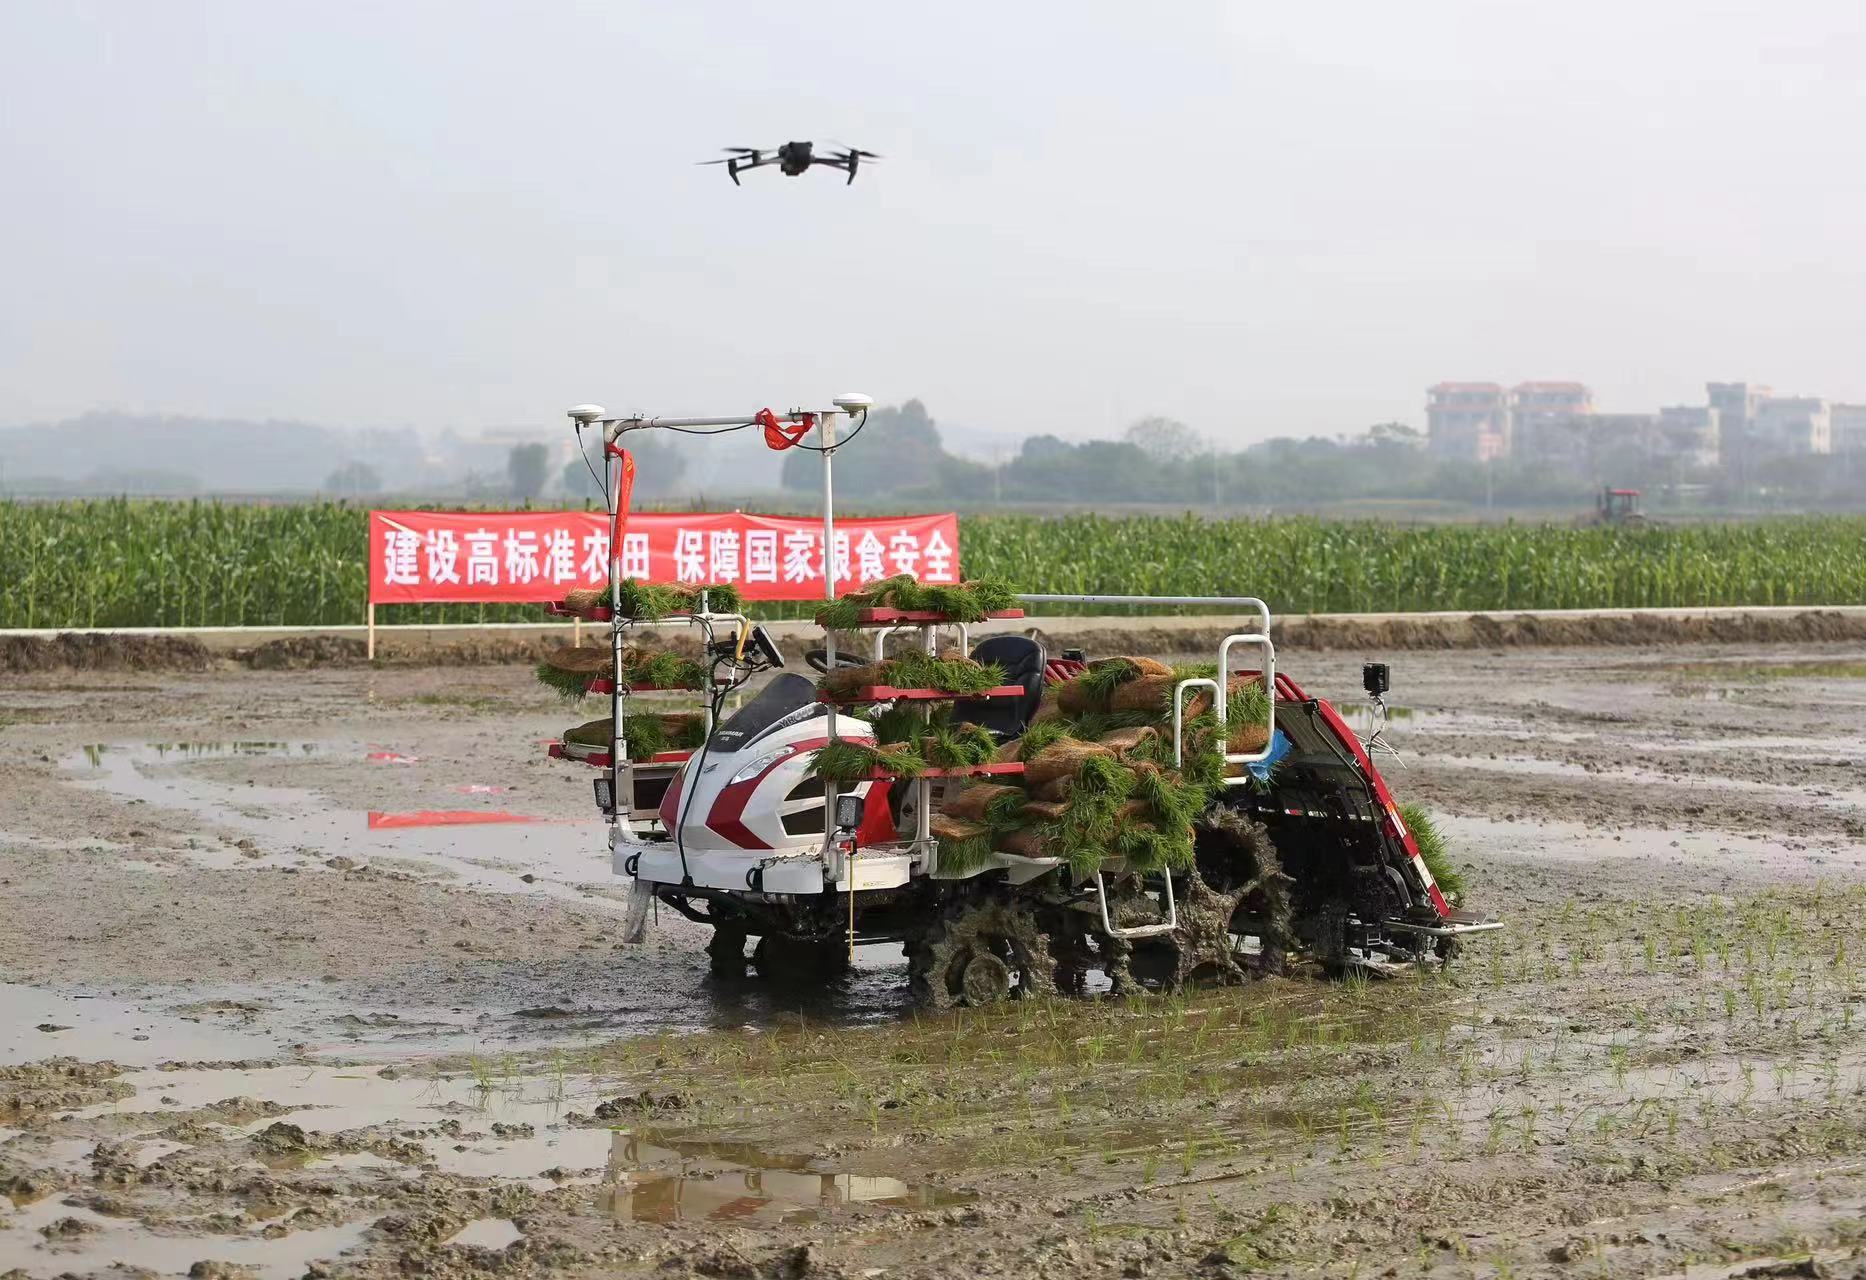 茂名市高州市丽晶农业科技有限公司无人农场内，无人驾驶插秧机正在田间穿梭。李敏 摄